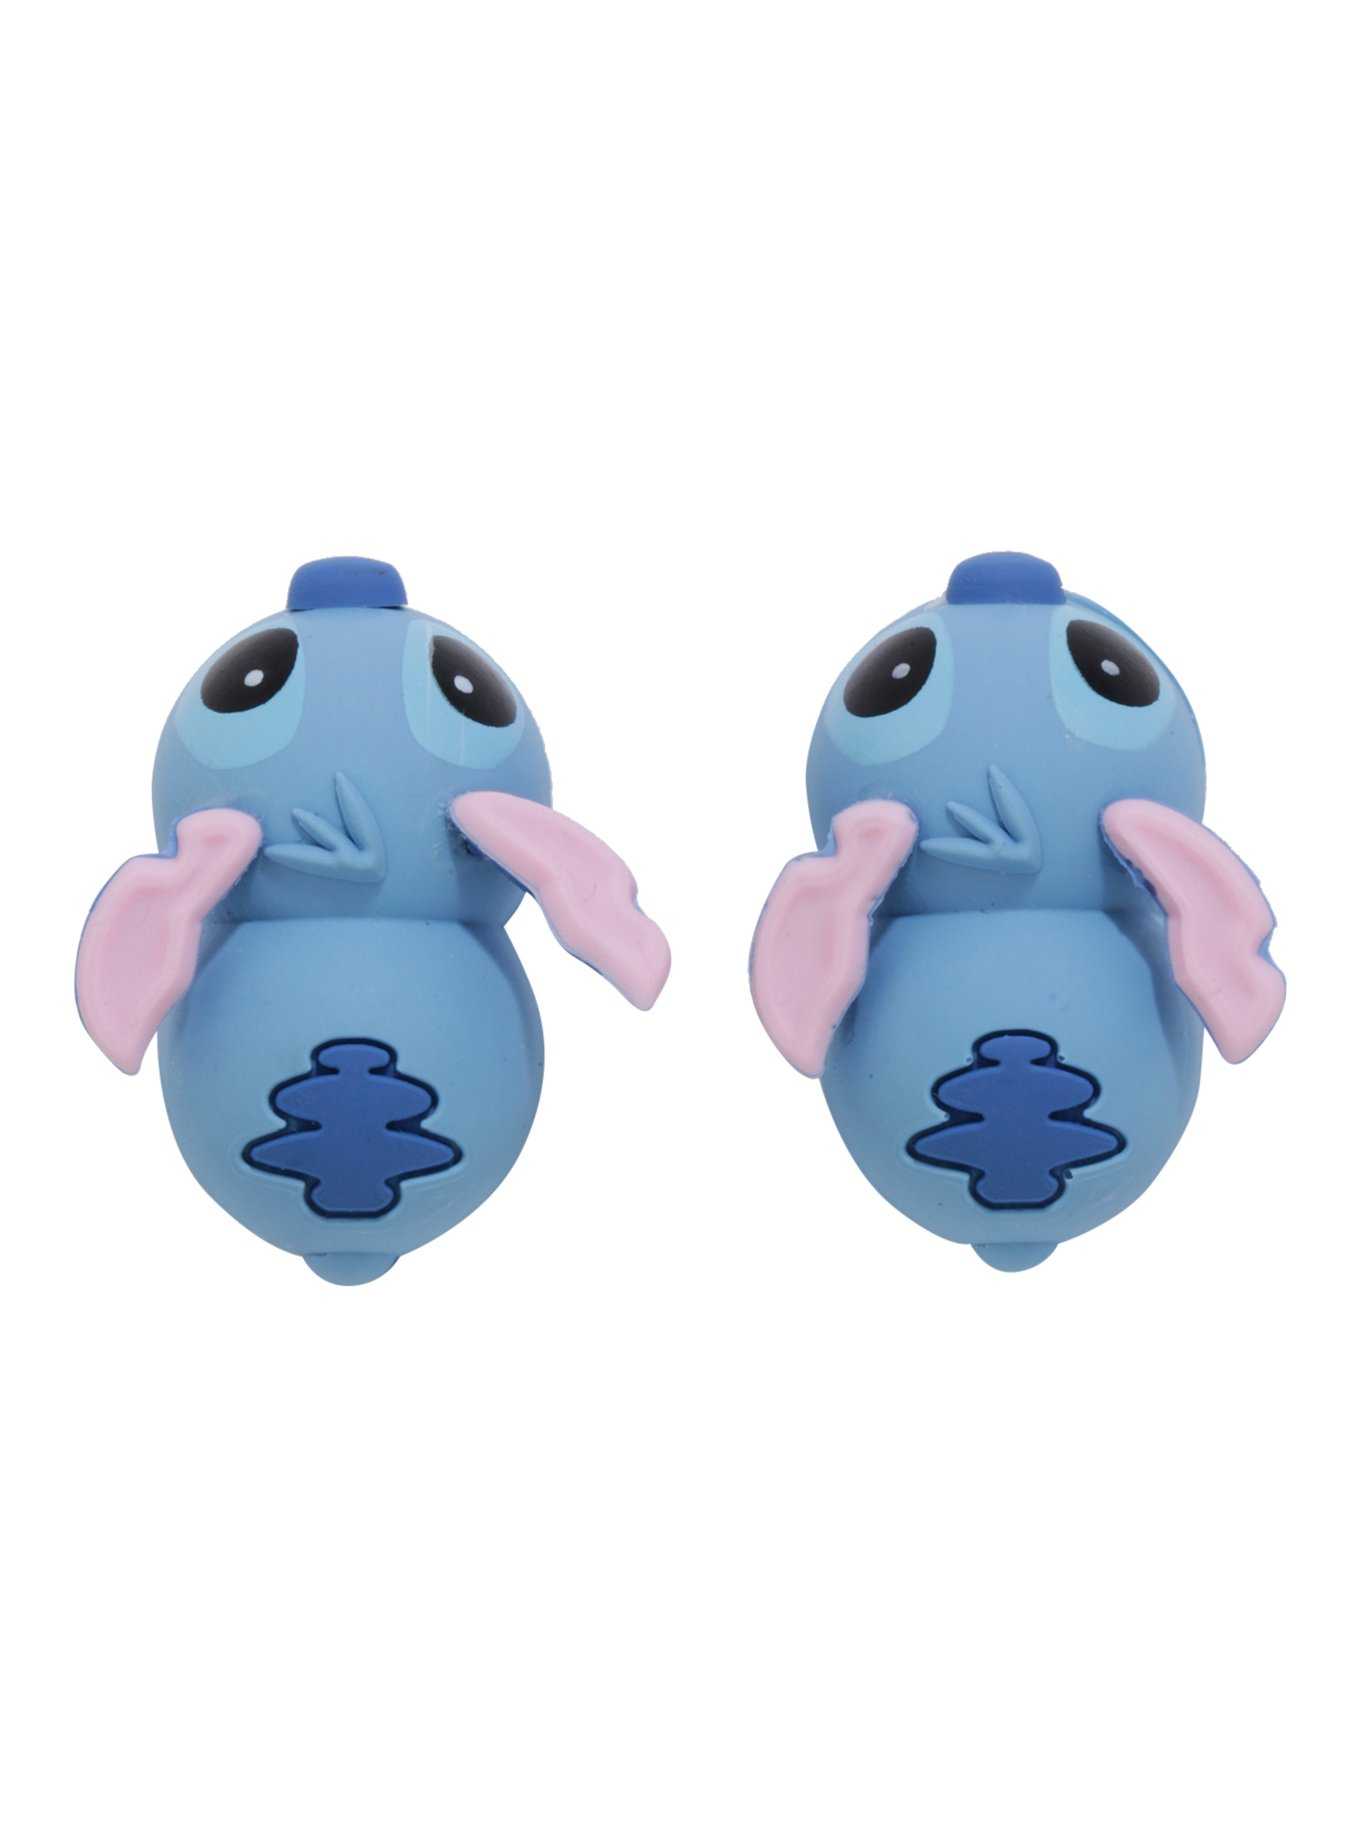 Disney Stitch Toys Online UK - Unicorn & Punkboi